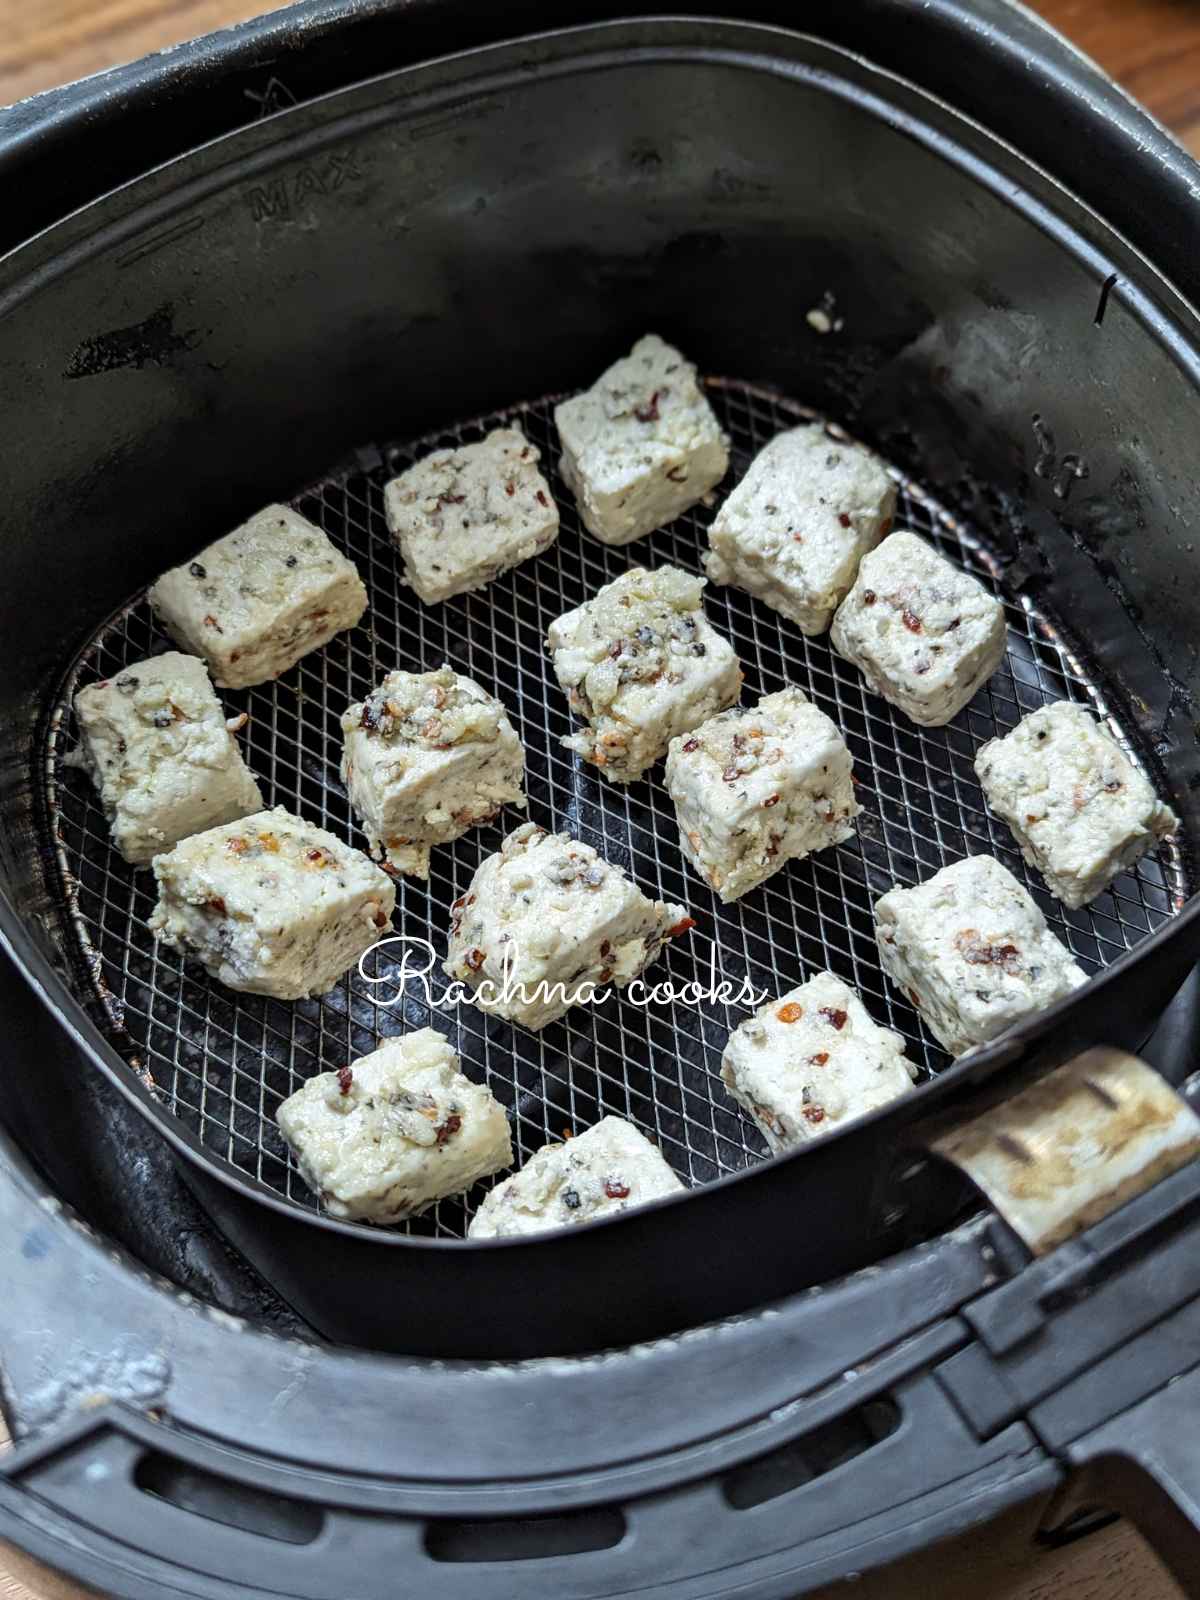 Seasoned tofu cubes in air fryer basket.